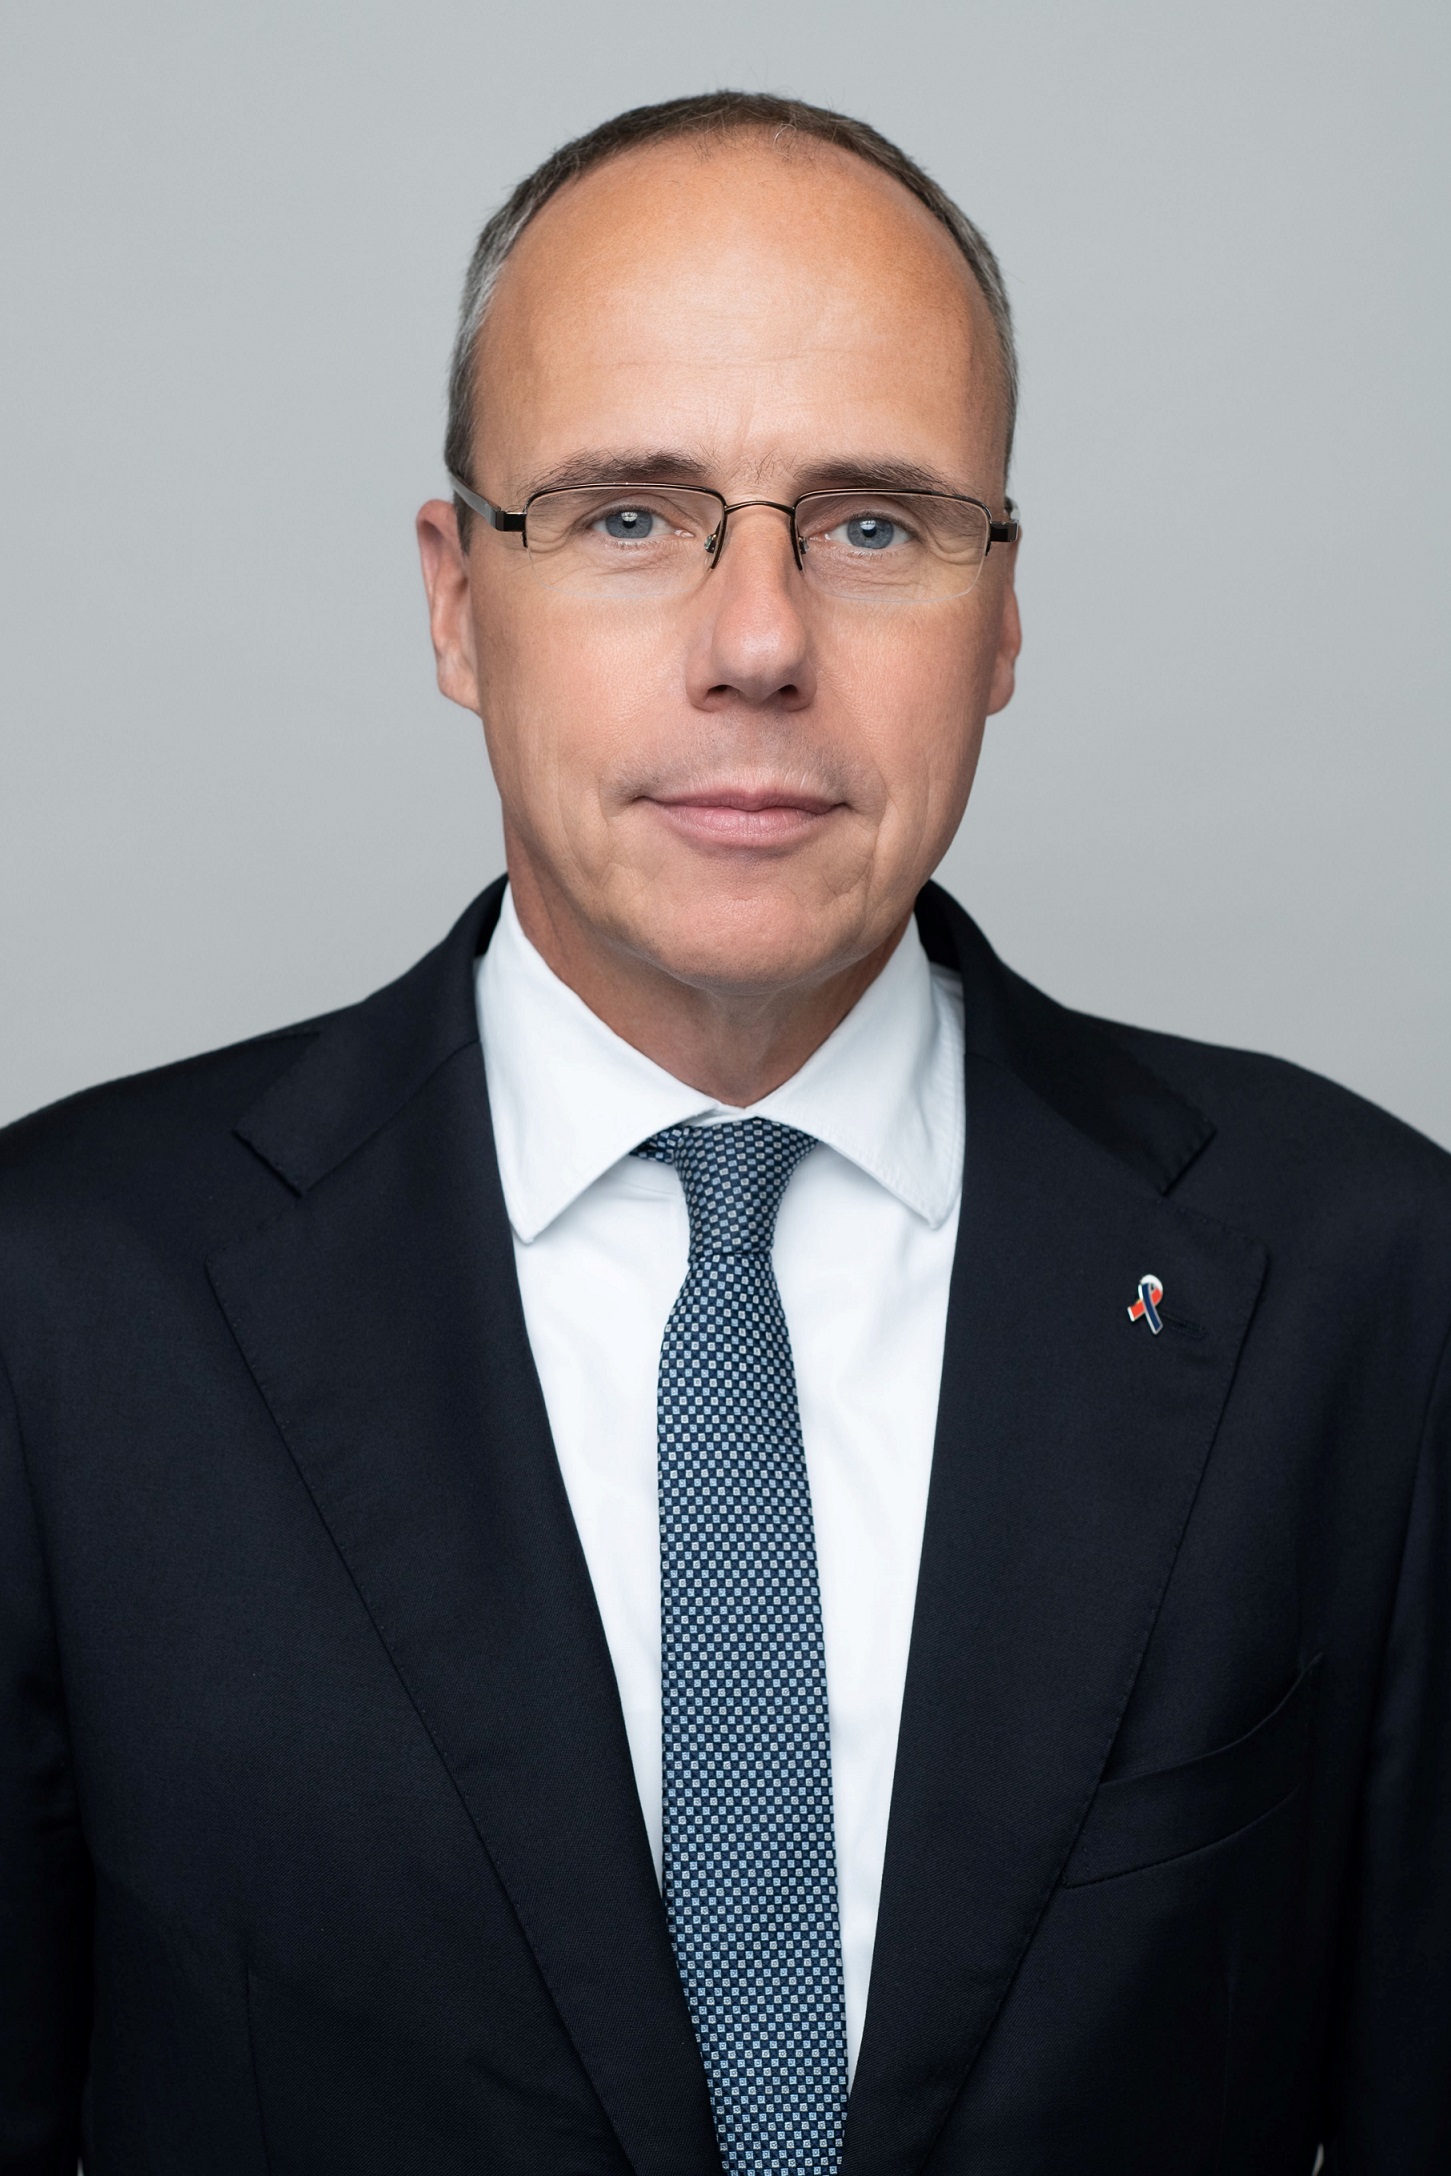 Peter Beuth, Hessischer Minister des Innern und für Sport